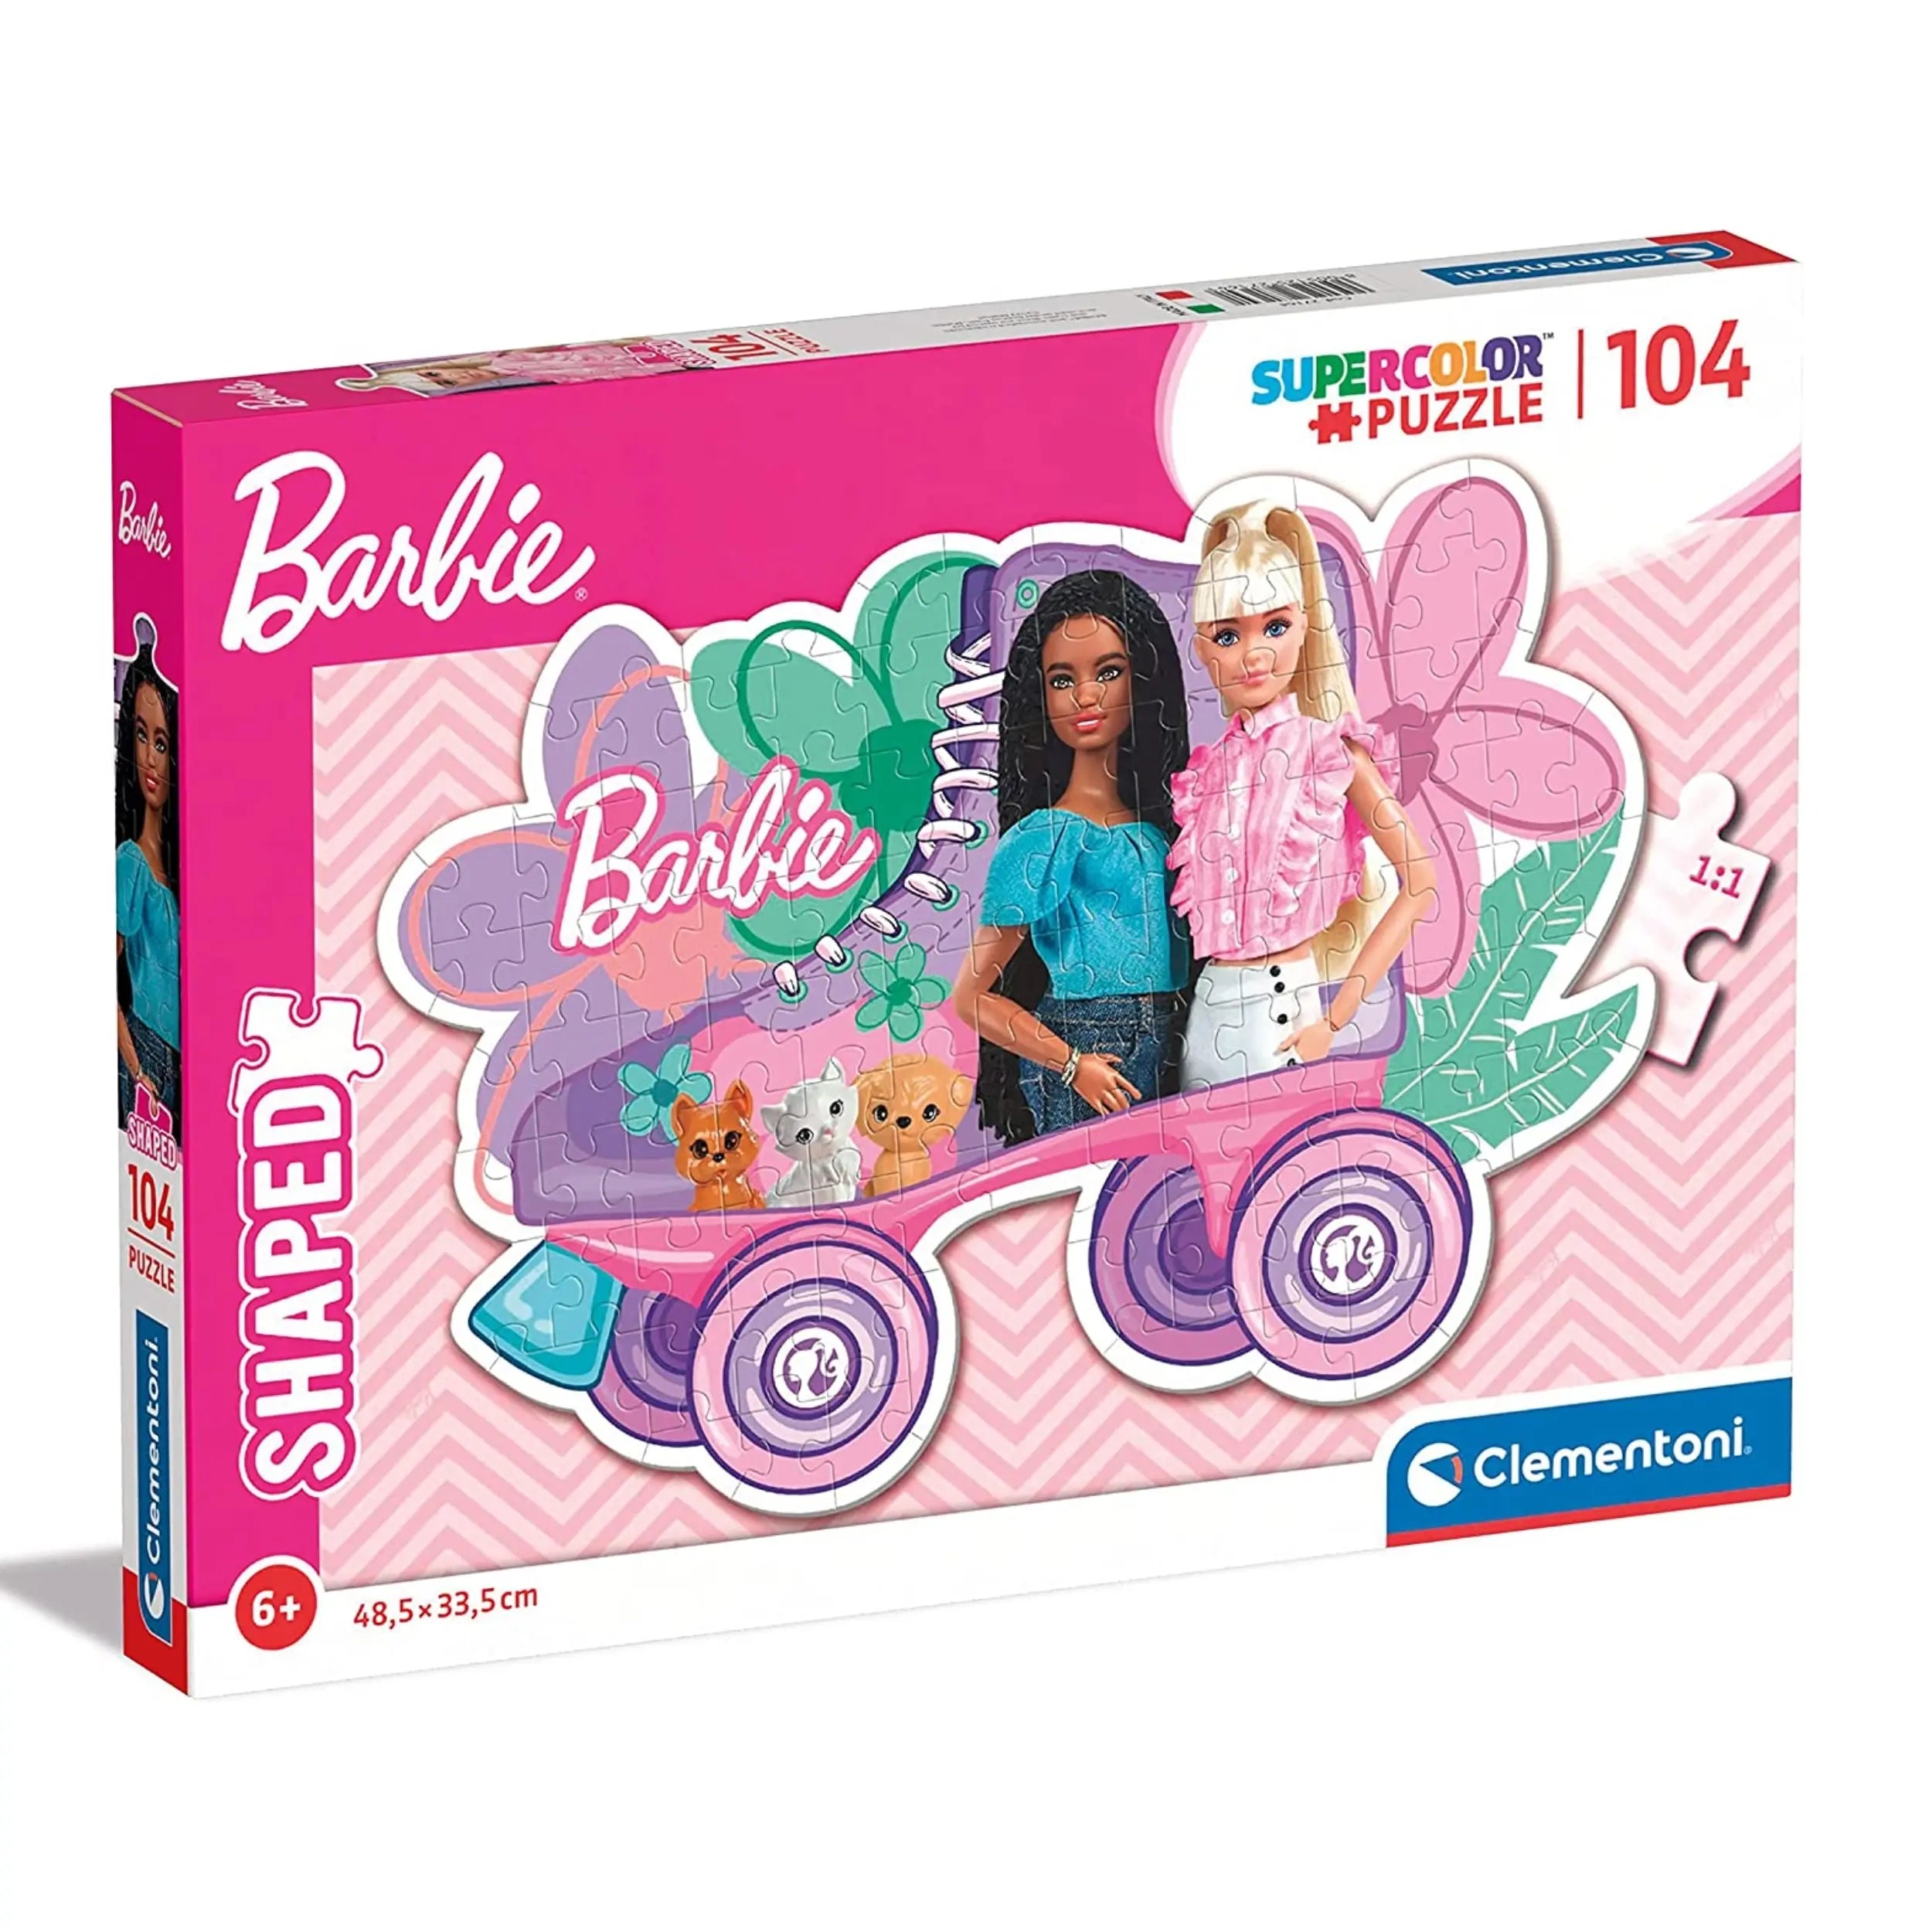 Clementoni - Barbie Puzzle 104 Pieces SuperColor Collection